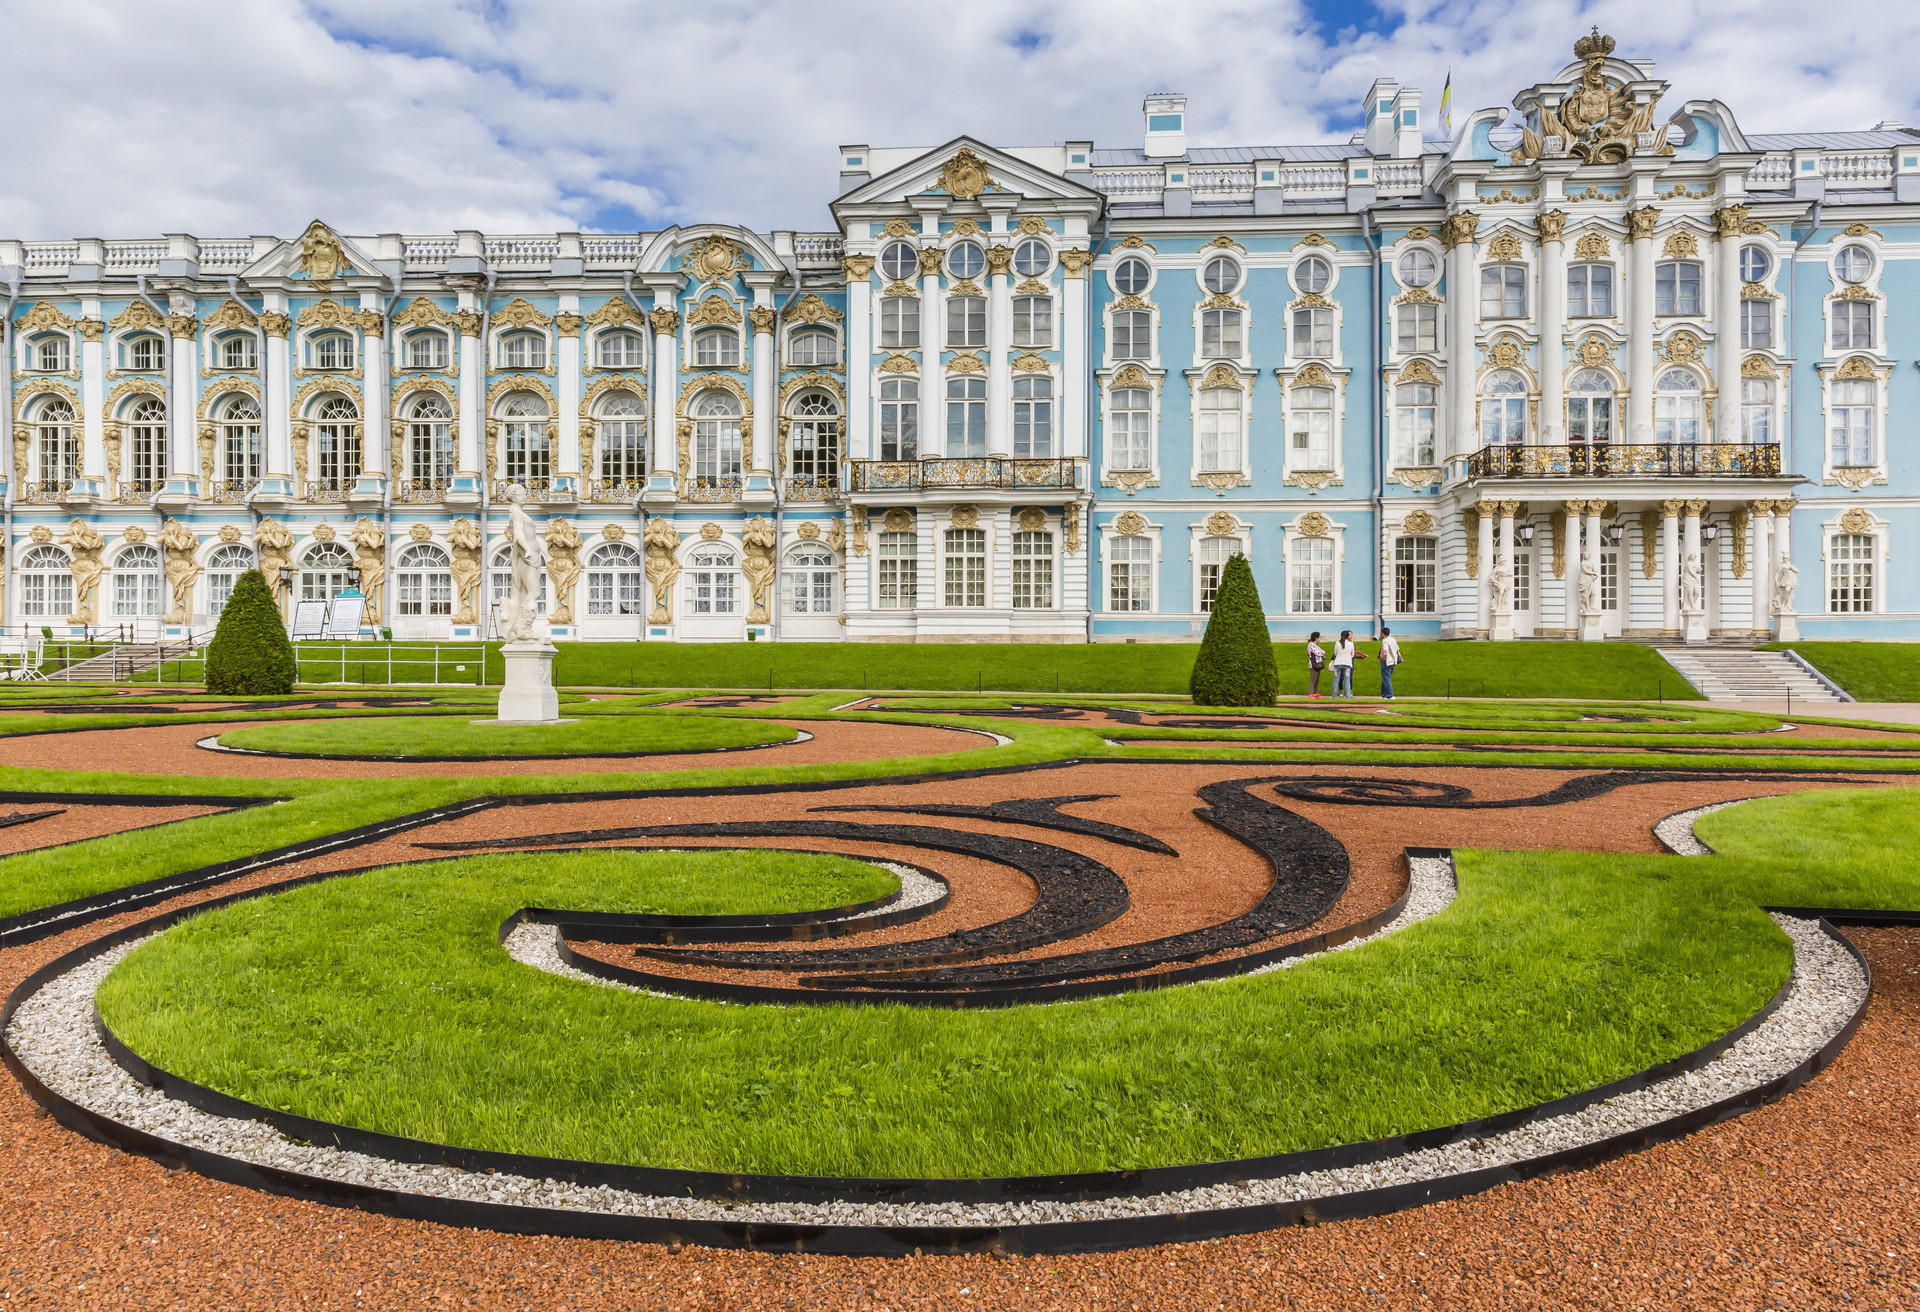 Rococo vind je ook buiten Frankrijk. In Pushkin, Rusland kun je het elegante Catharinapaleis bewonderen